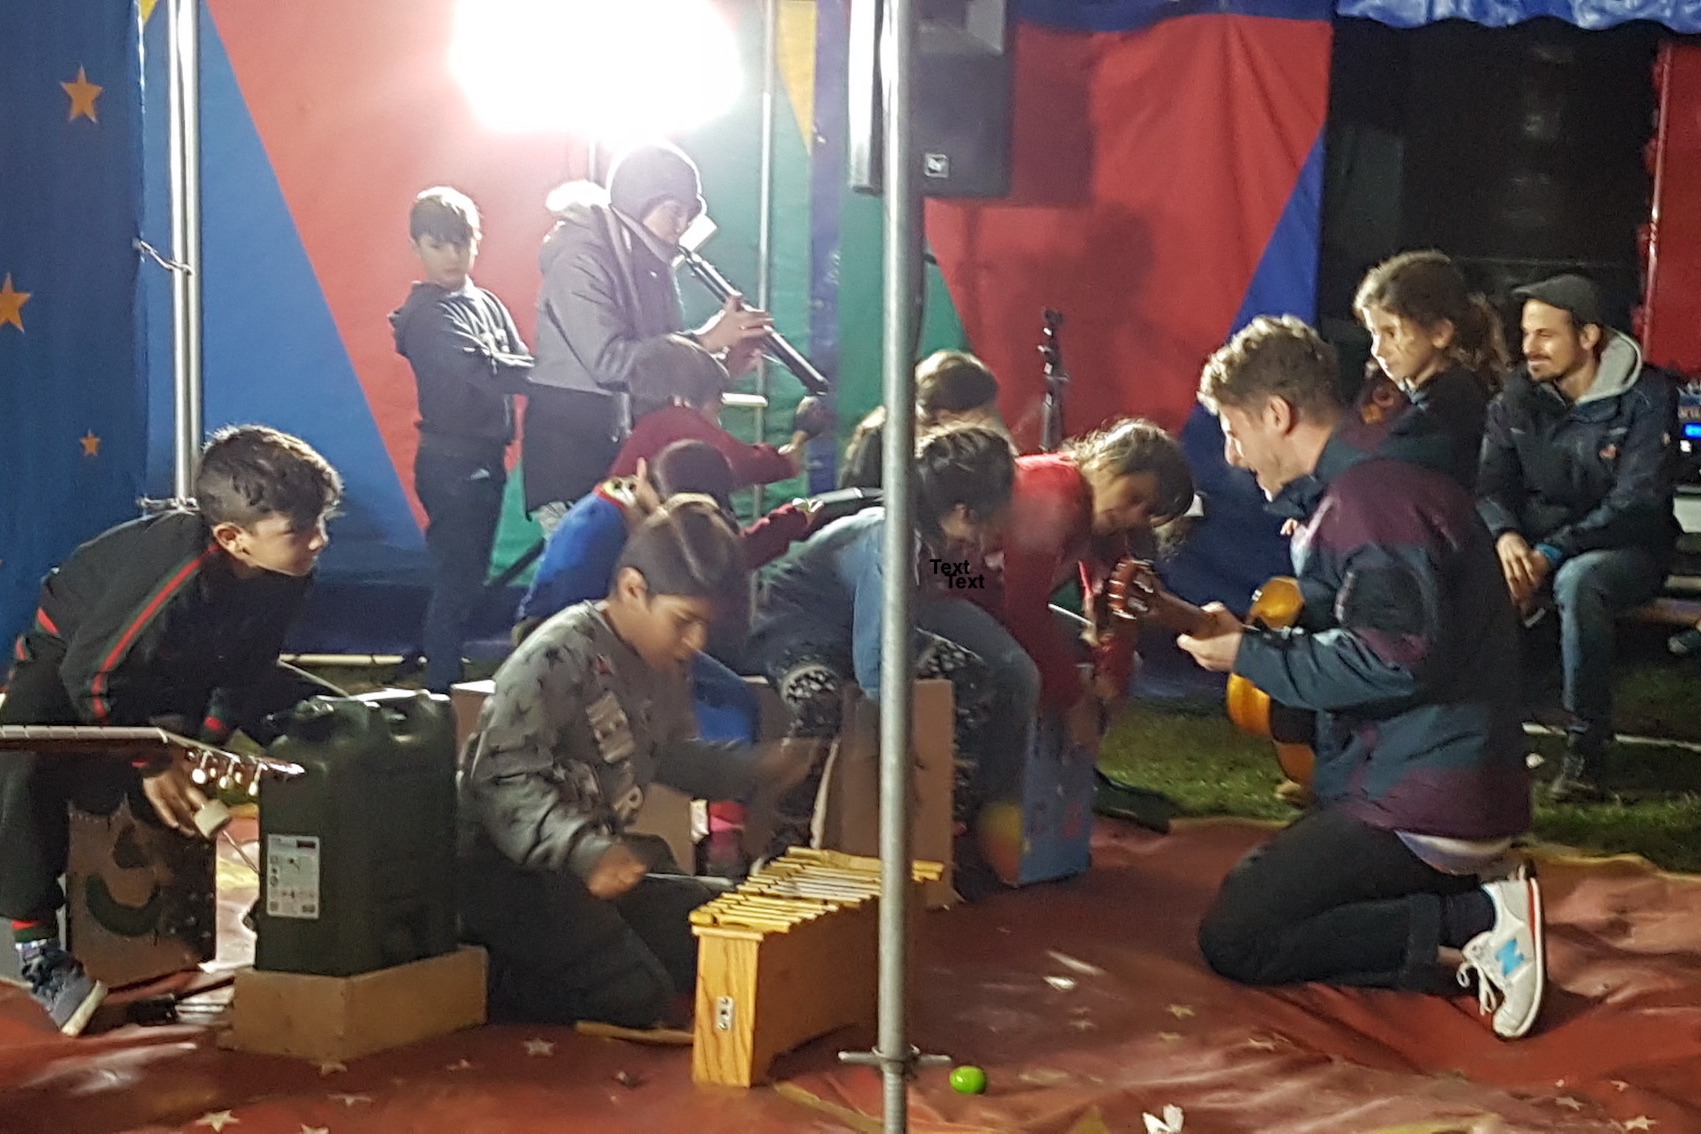 Grundschulkinder spielen mit Dozenten auf dem Boden eines Zeltes energetisch auf Band- und Orff-Instrumenten